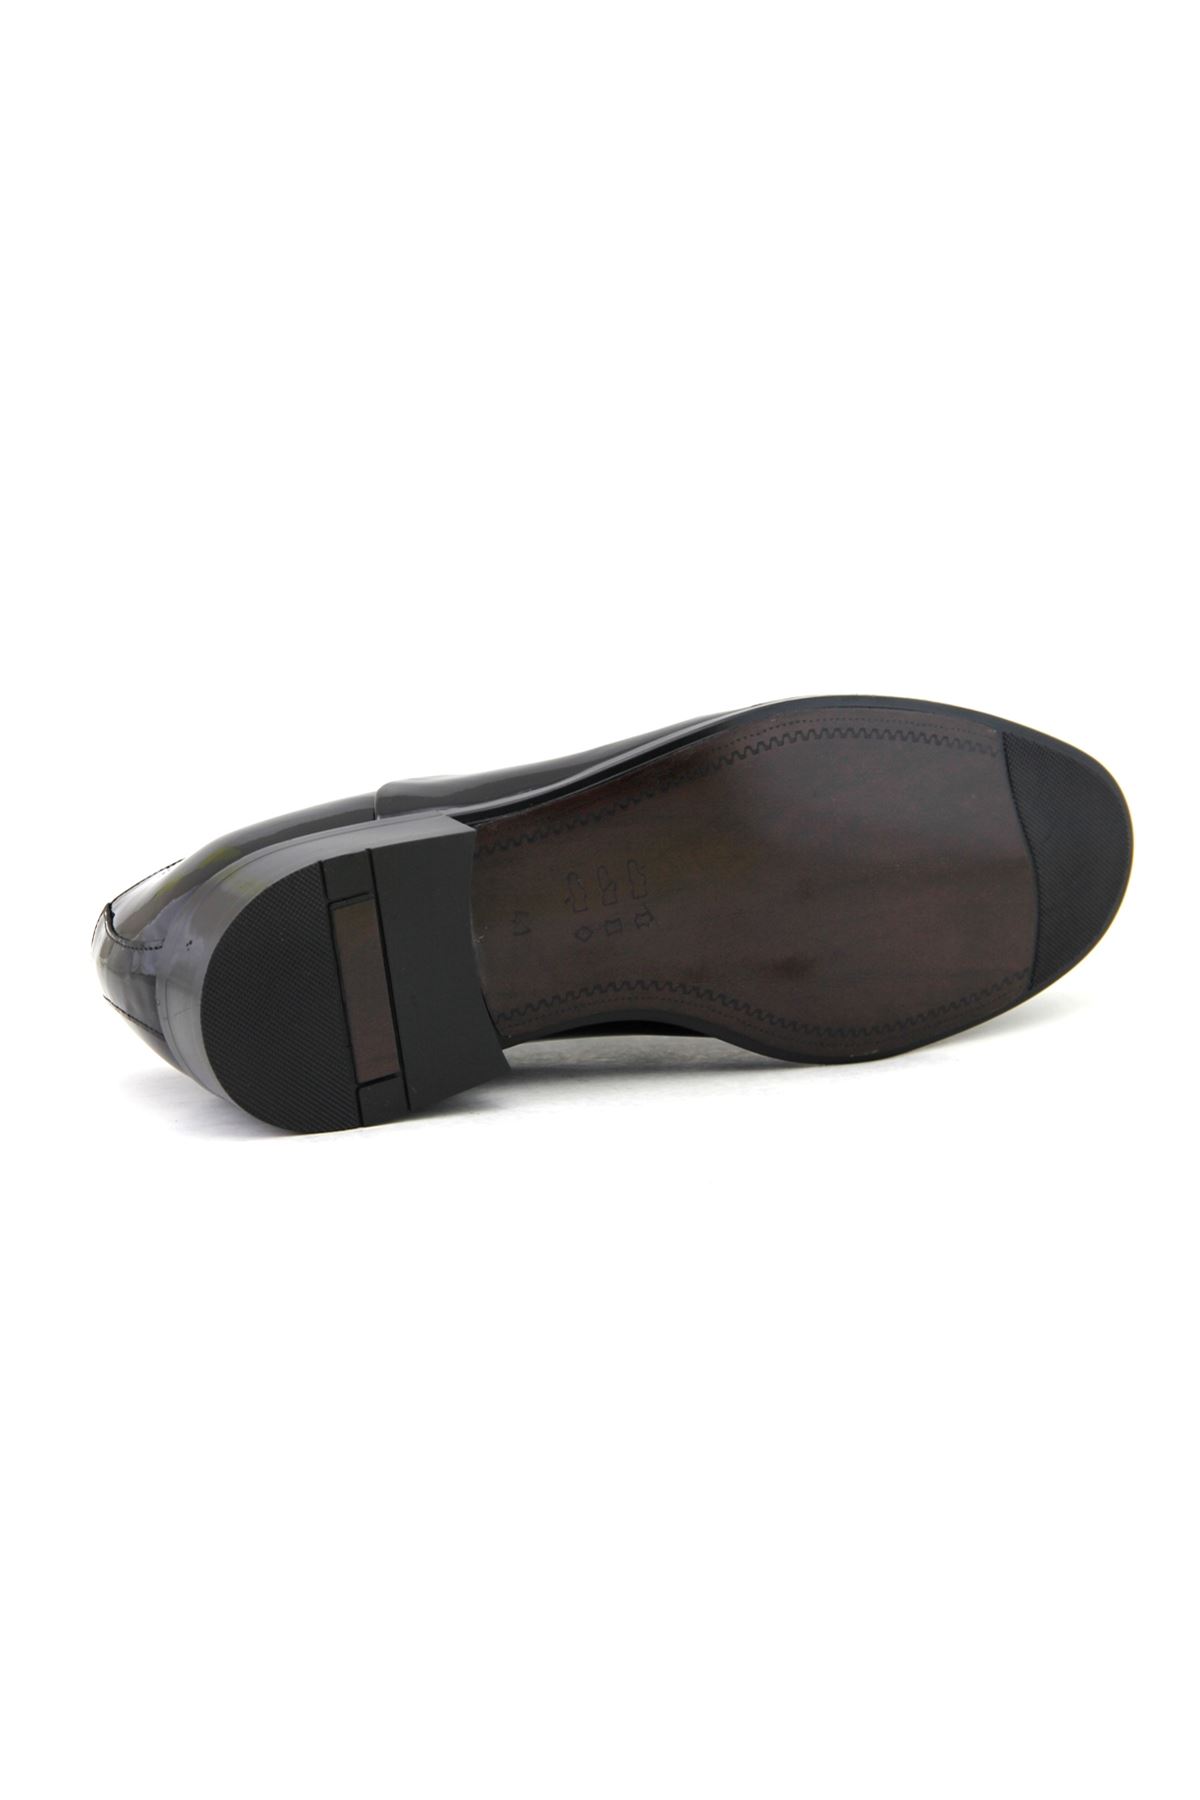 Fosco 7102 Hakiki Deri Klasik Erkek Ayakkabı - Siyah Rugan